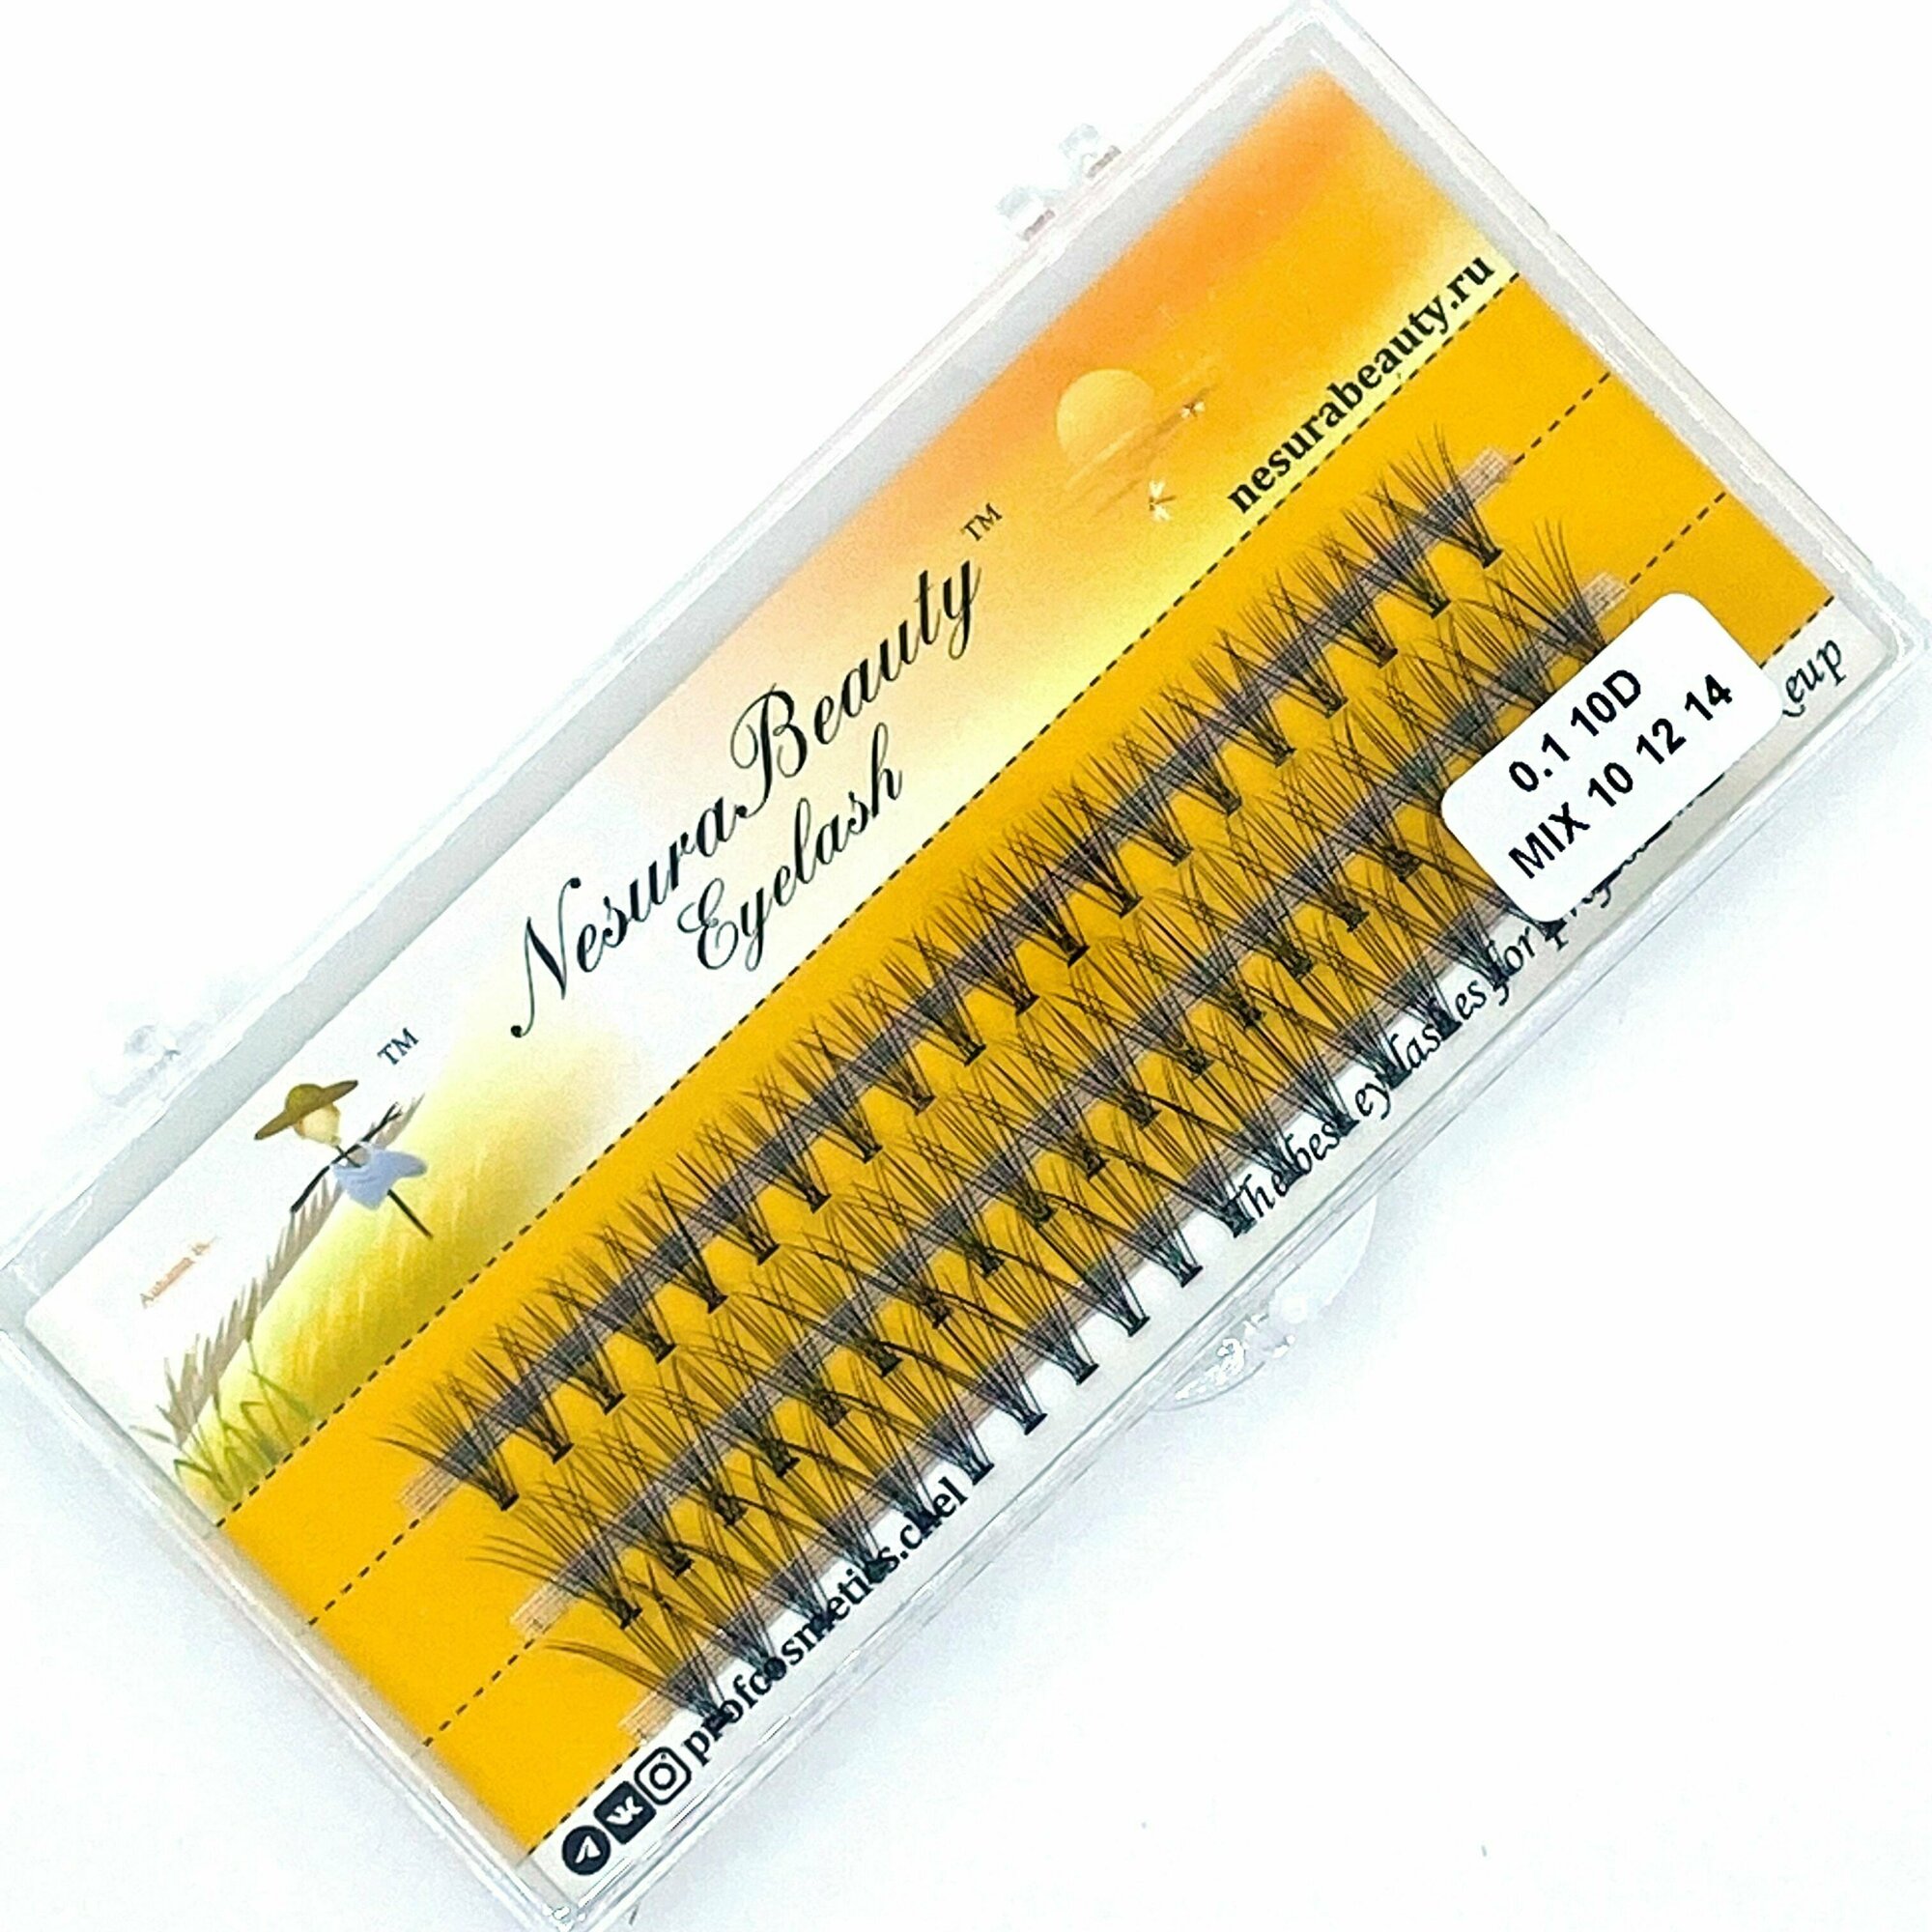 NesuraBeauty / 10D / Накладные пучки ресниц / MIX 10 12 14 мм, 0.1, изгиб С 10Д / для макияжа и визажиста